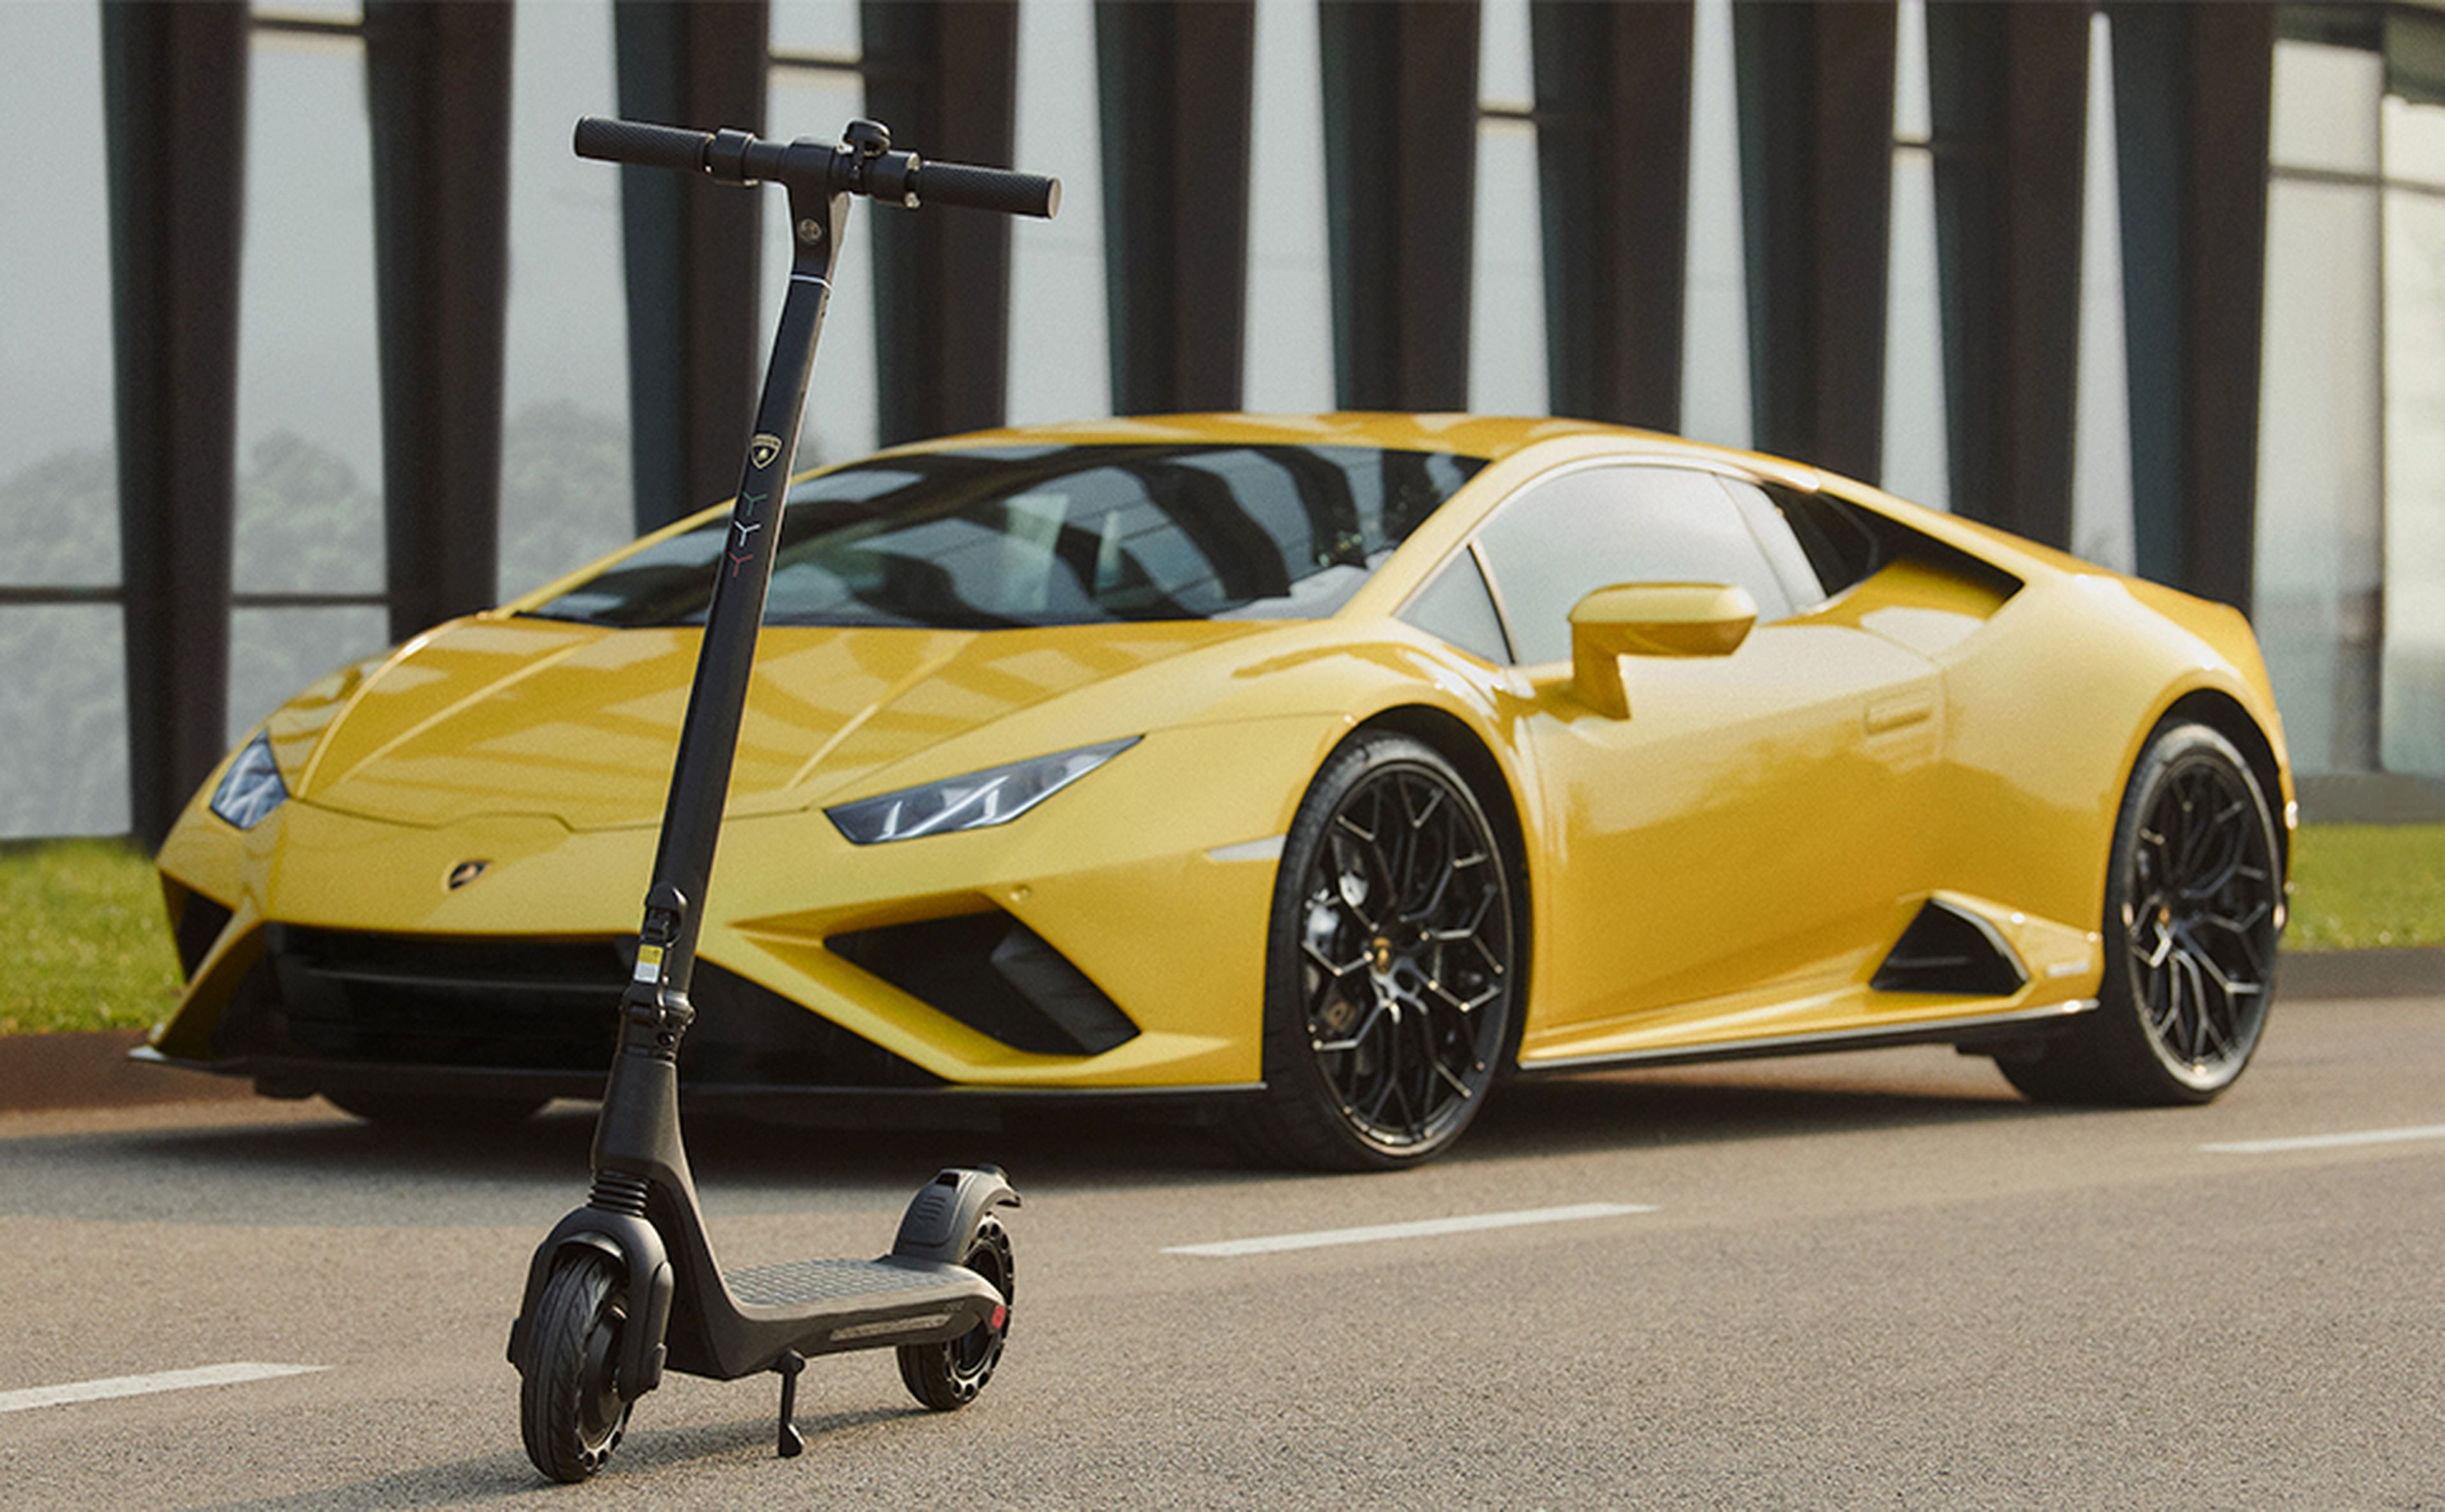 Ya puedes presumir de Lamborghini por menos de 500 euros... eso sí, es un patinete, no un coche...